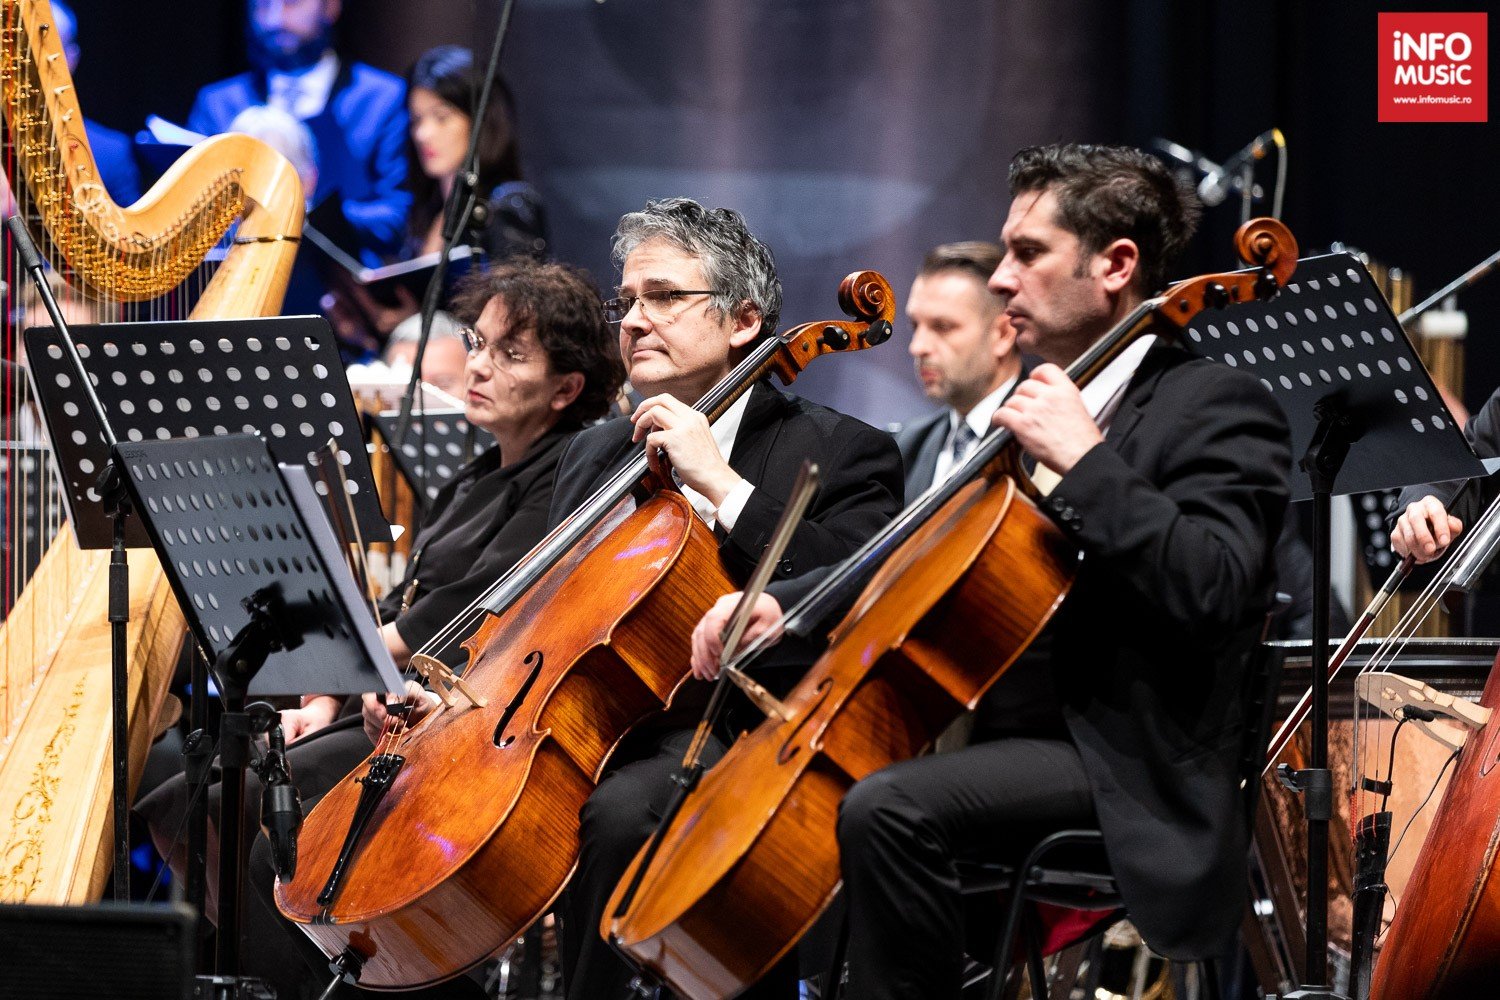 Tudor Gheorghe în concertul DEGEABA 30 din 22 decembrie 2019